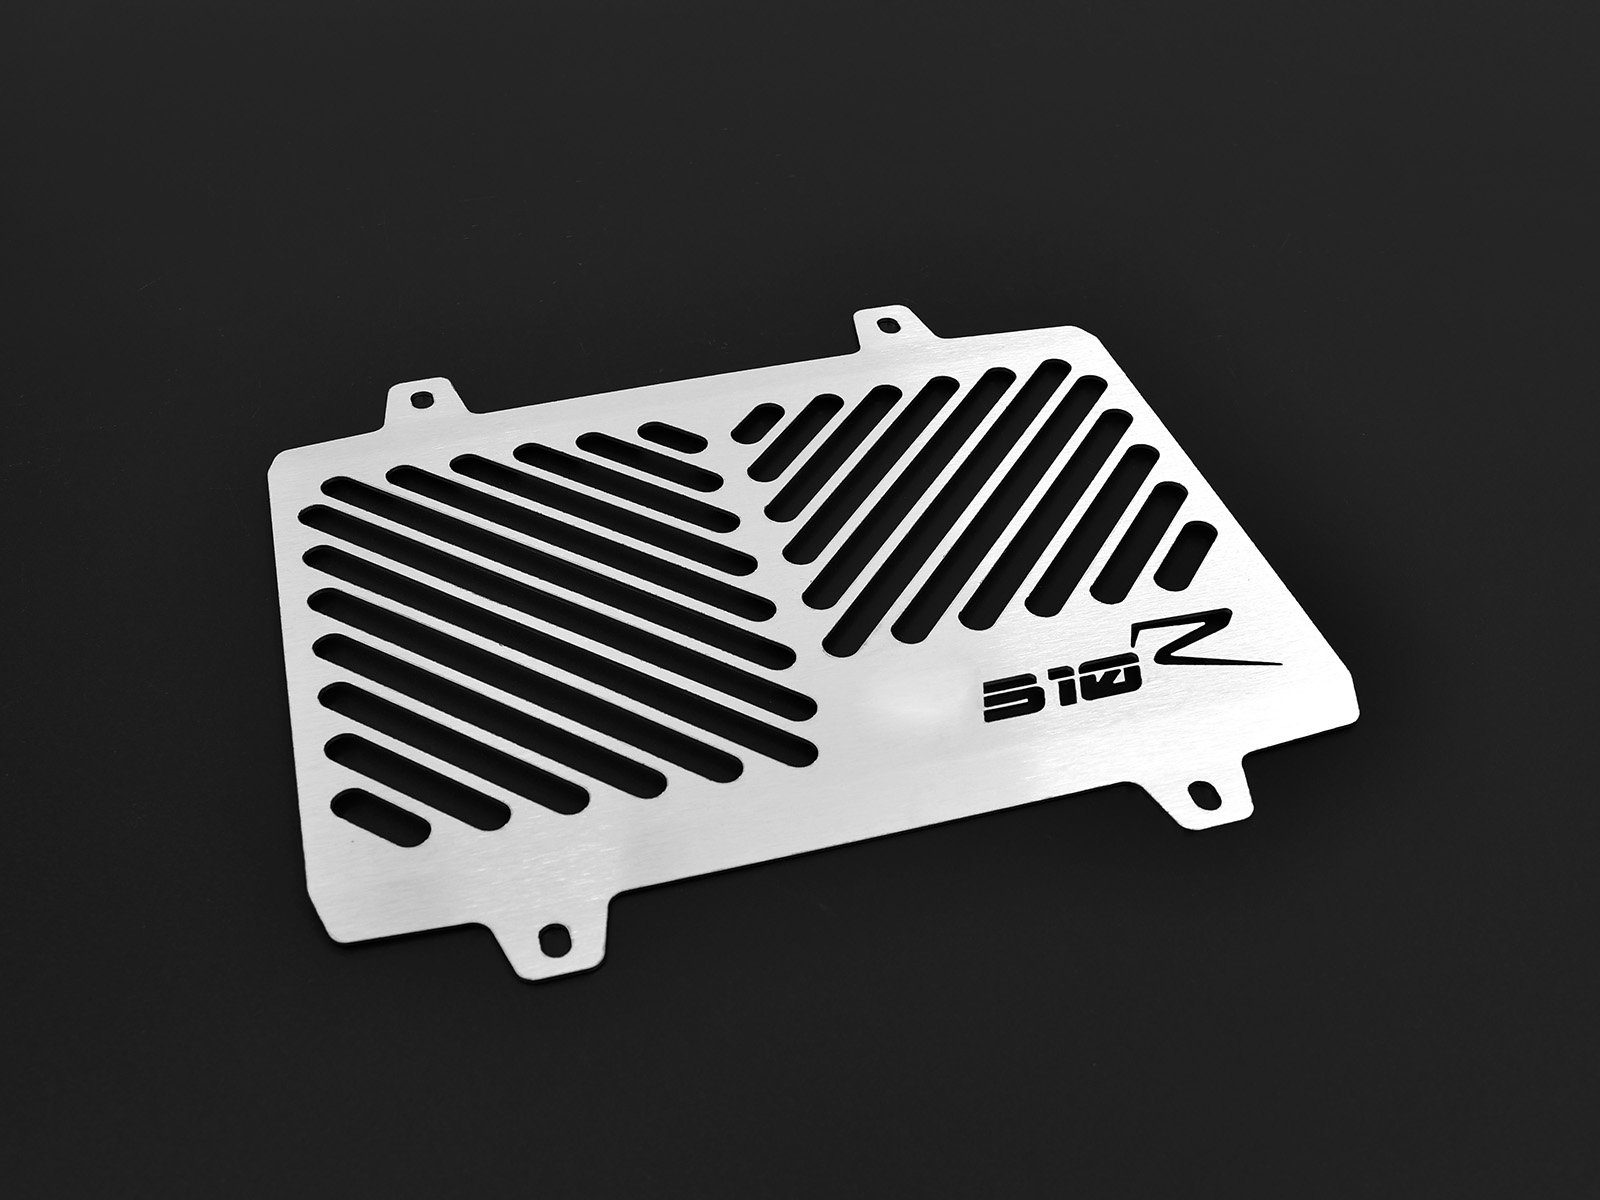 ZIEGER Motorrad-Additiv Kühlerabdeckung für BMW G 310 R Logo silber, Motorradkühlerabdeckung